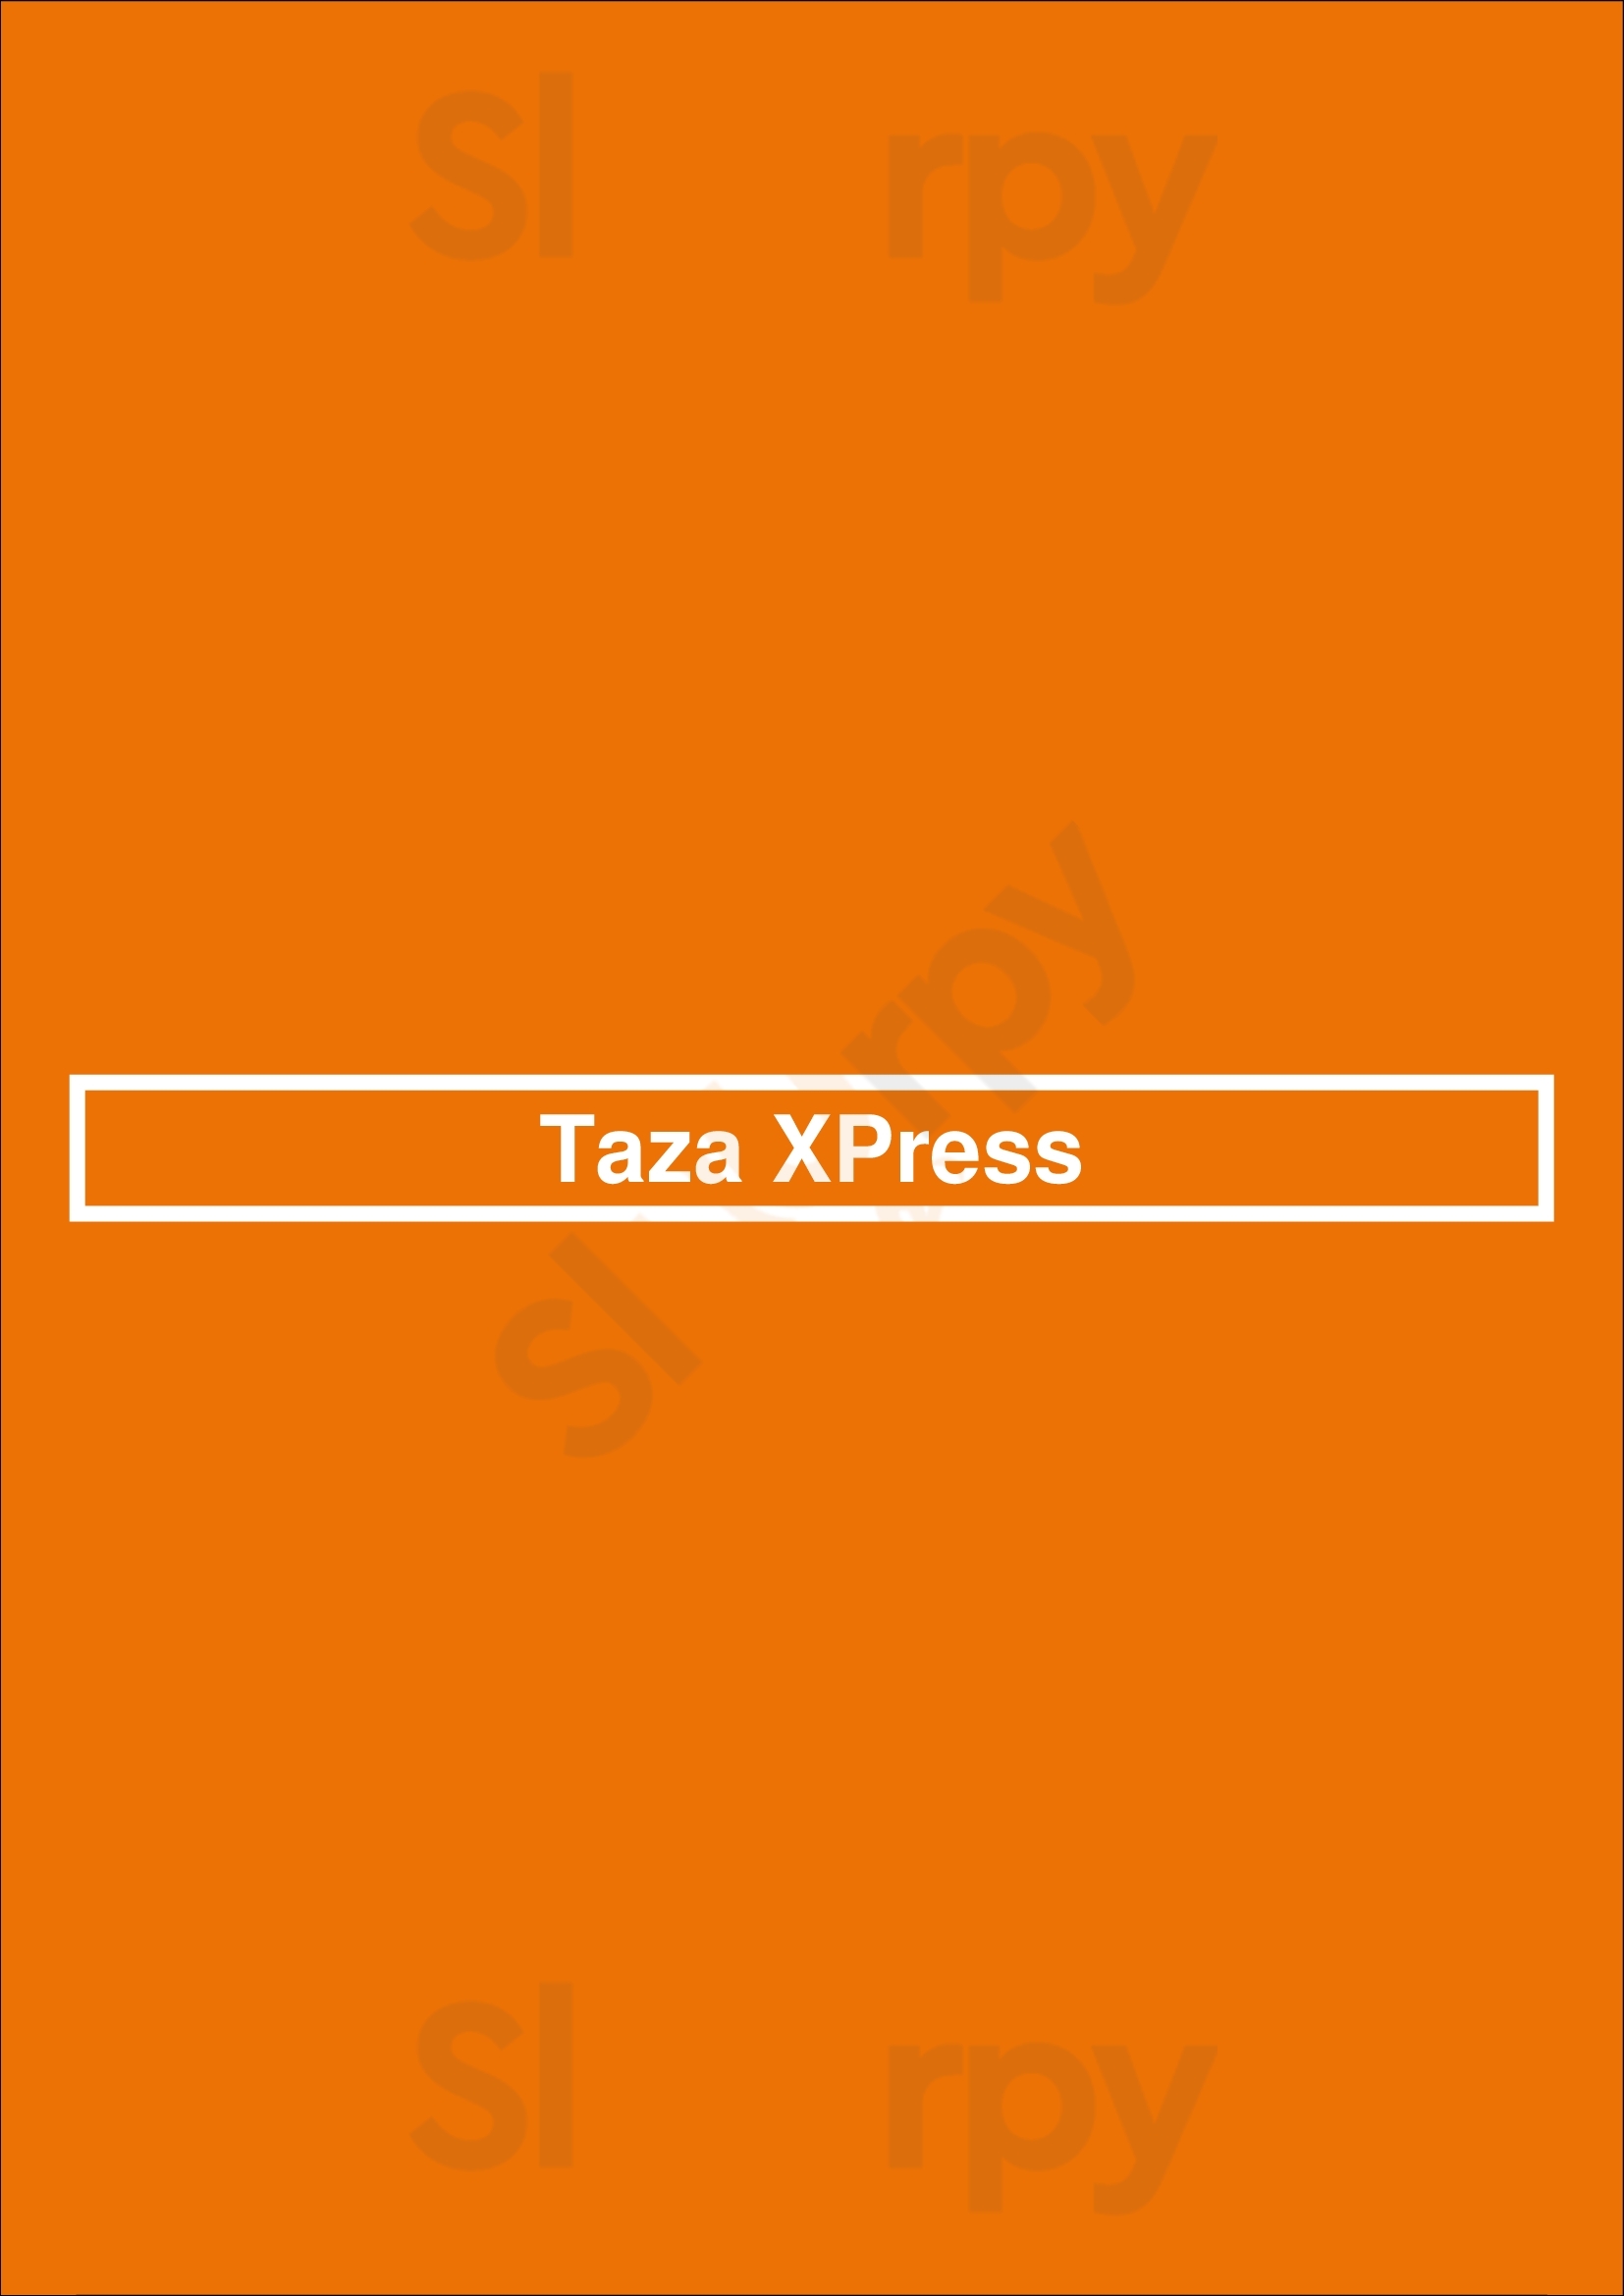 Taza Xpress Mississauga Menu - 1